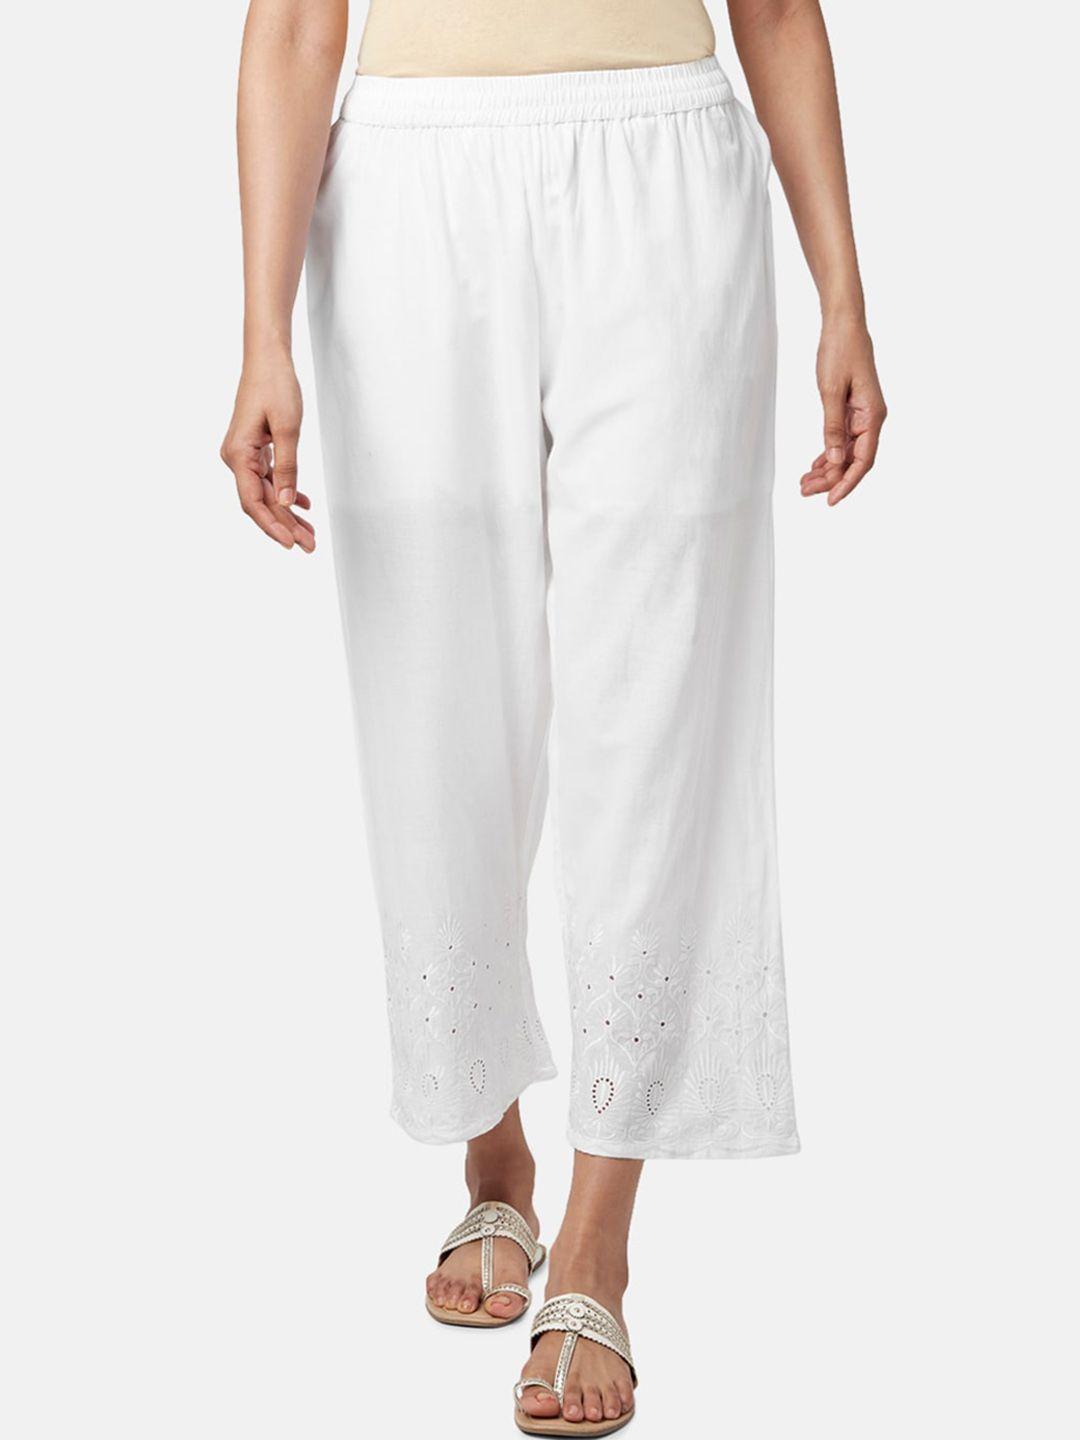 rangmanch-by-pantaloons-women-floral-cotton-trousers